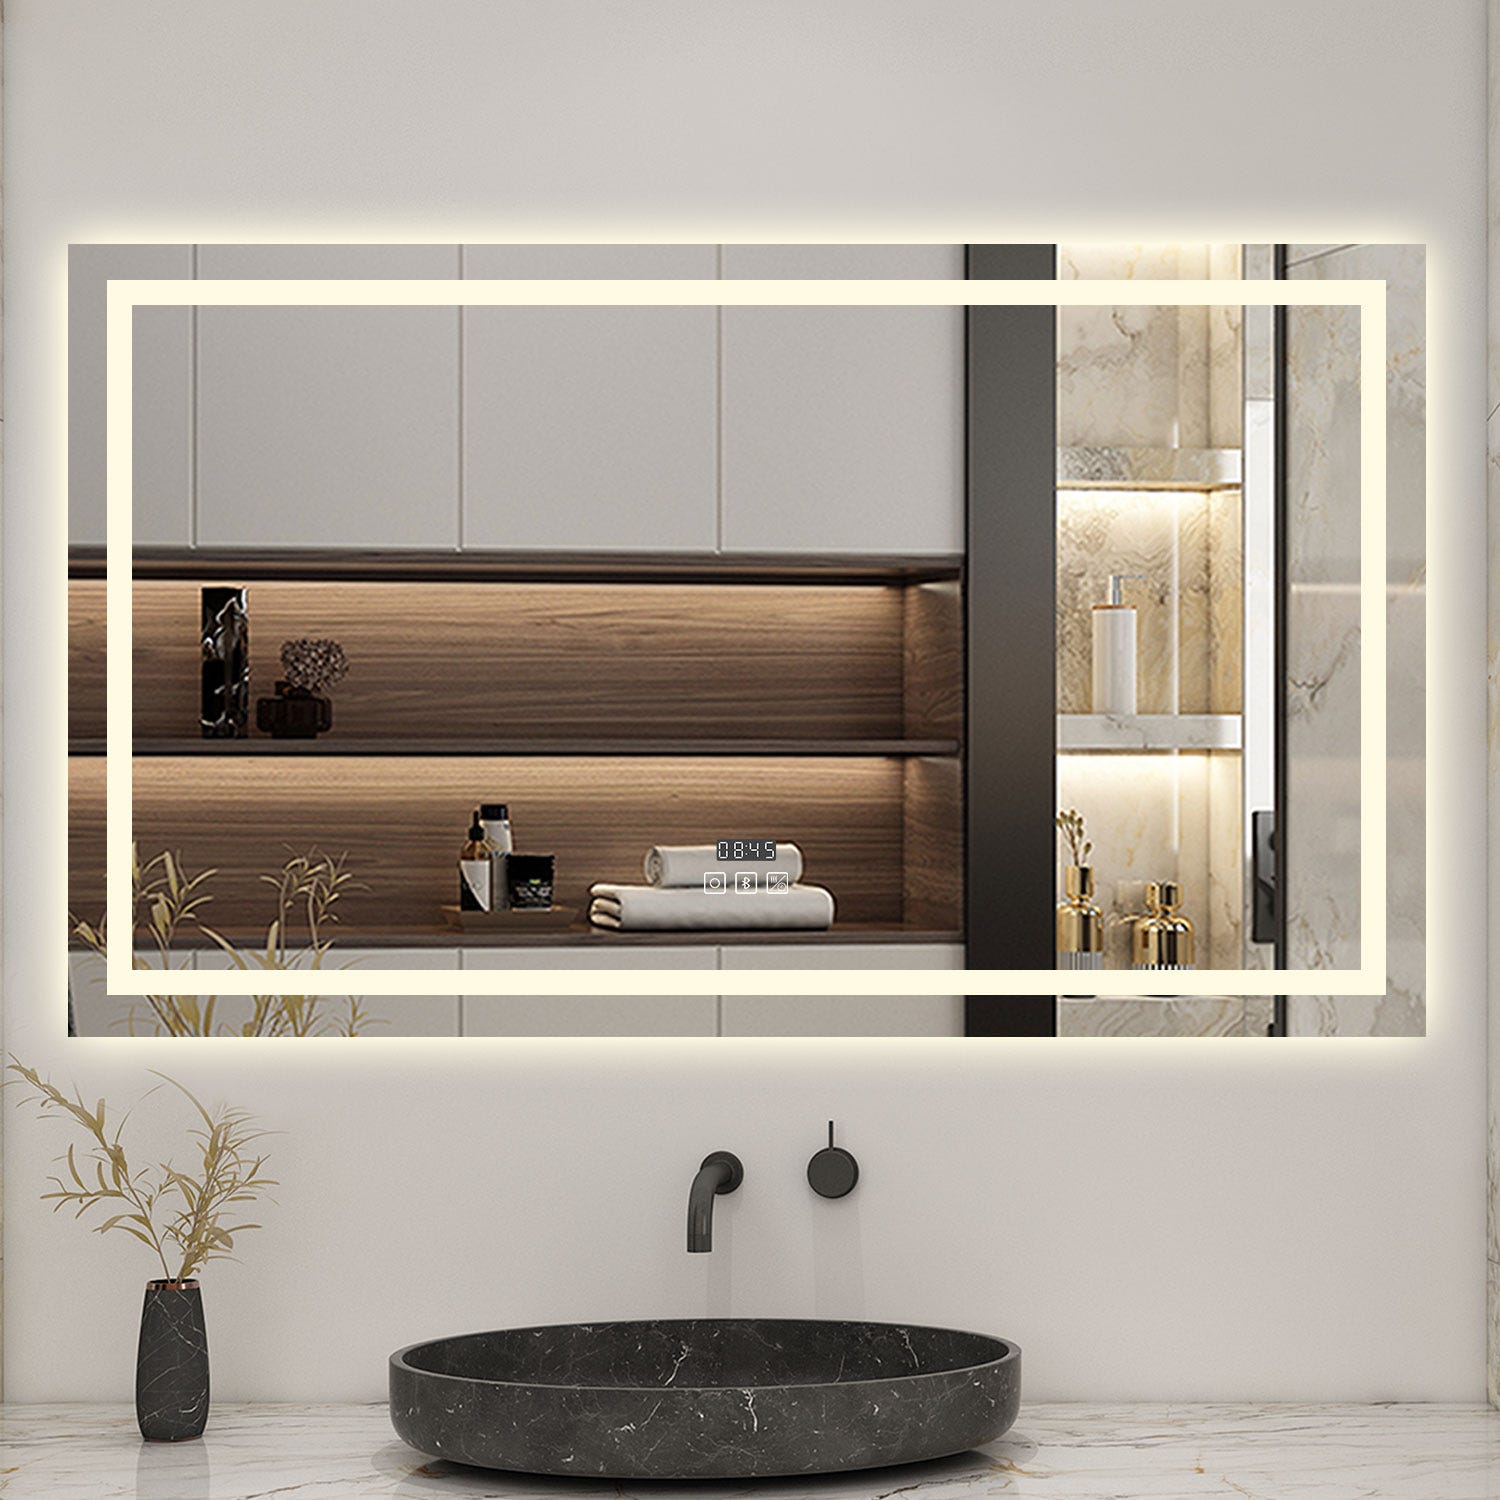 AICA Miroir lumineux Horloge + bluetooth + tricolore + anti-buée 120x70cm salle de bain dimmable,mémoire,tactile,led 4